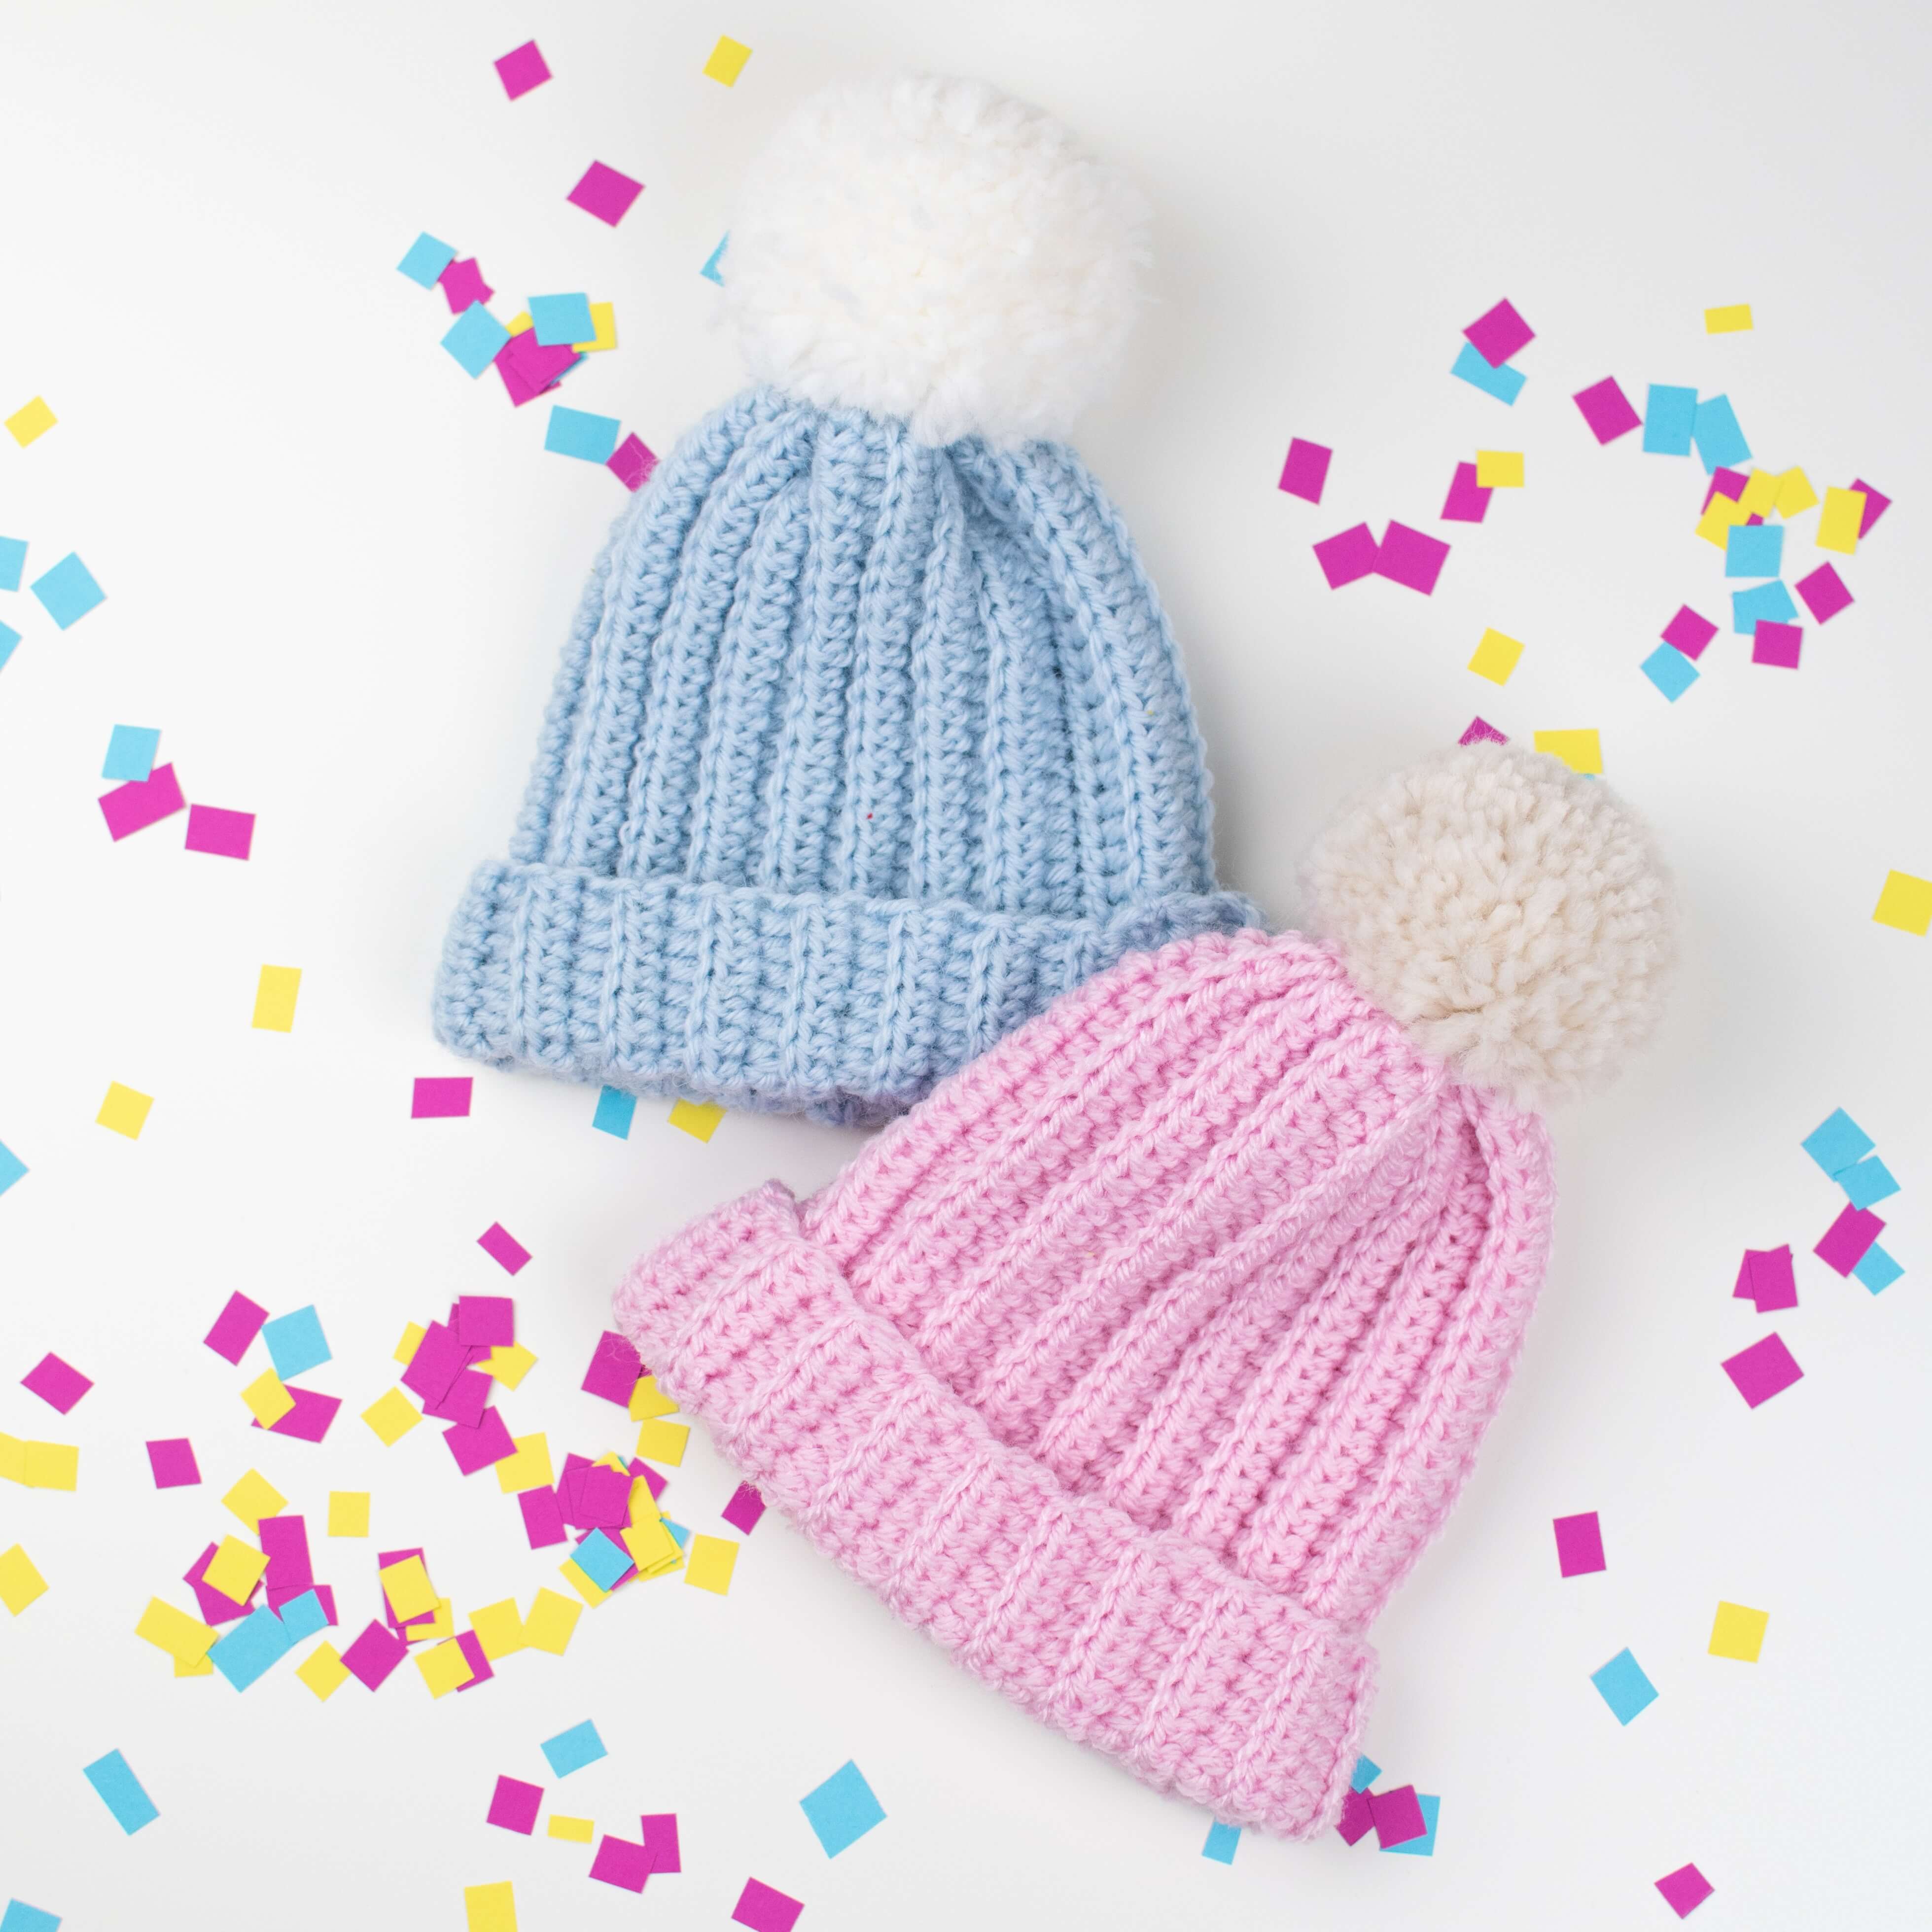 Beginner double knit hat pattern free